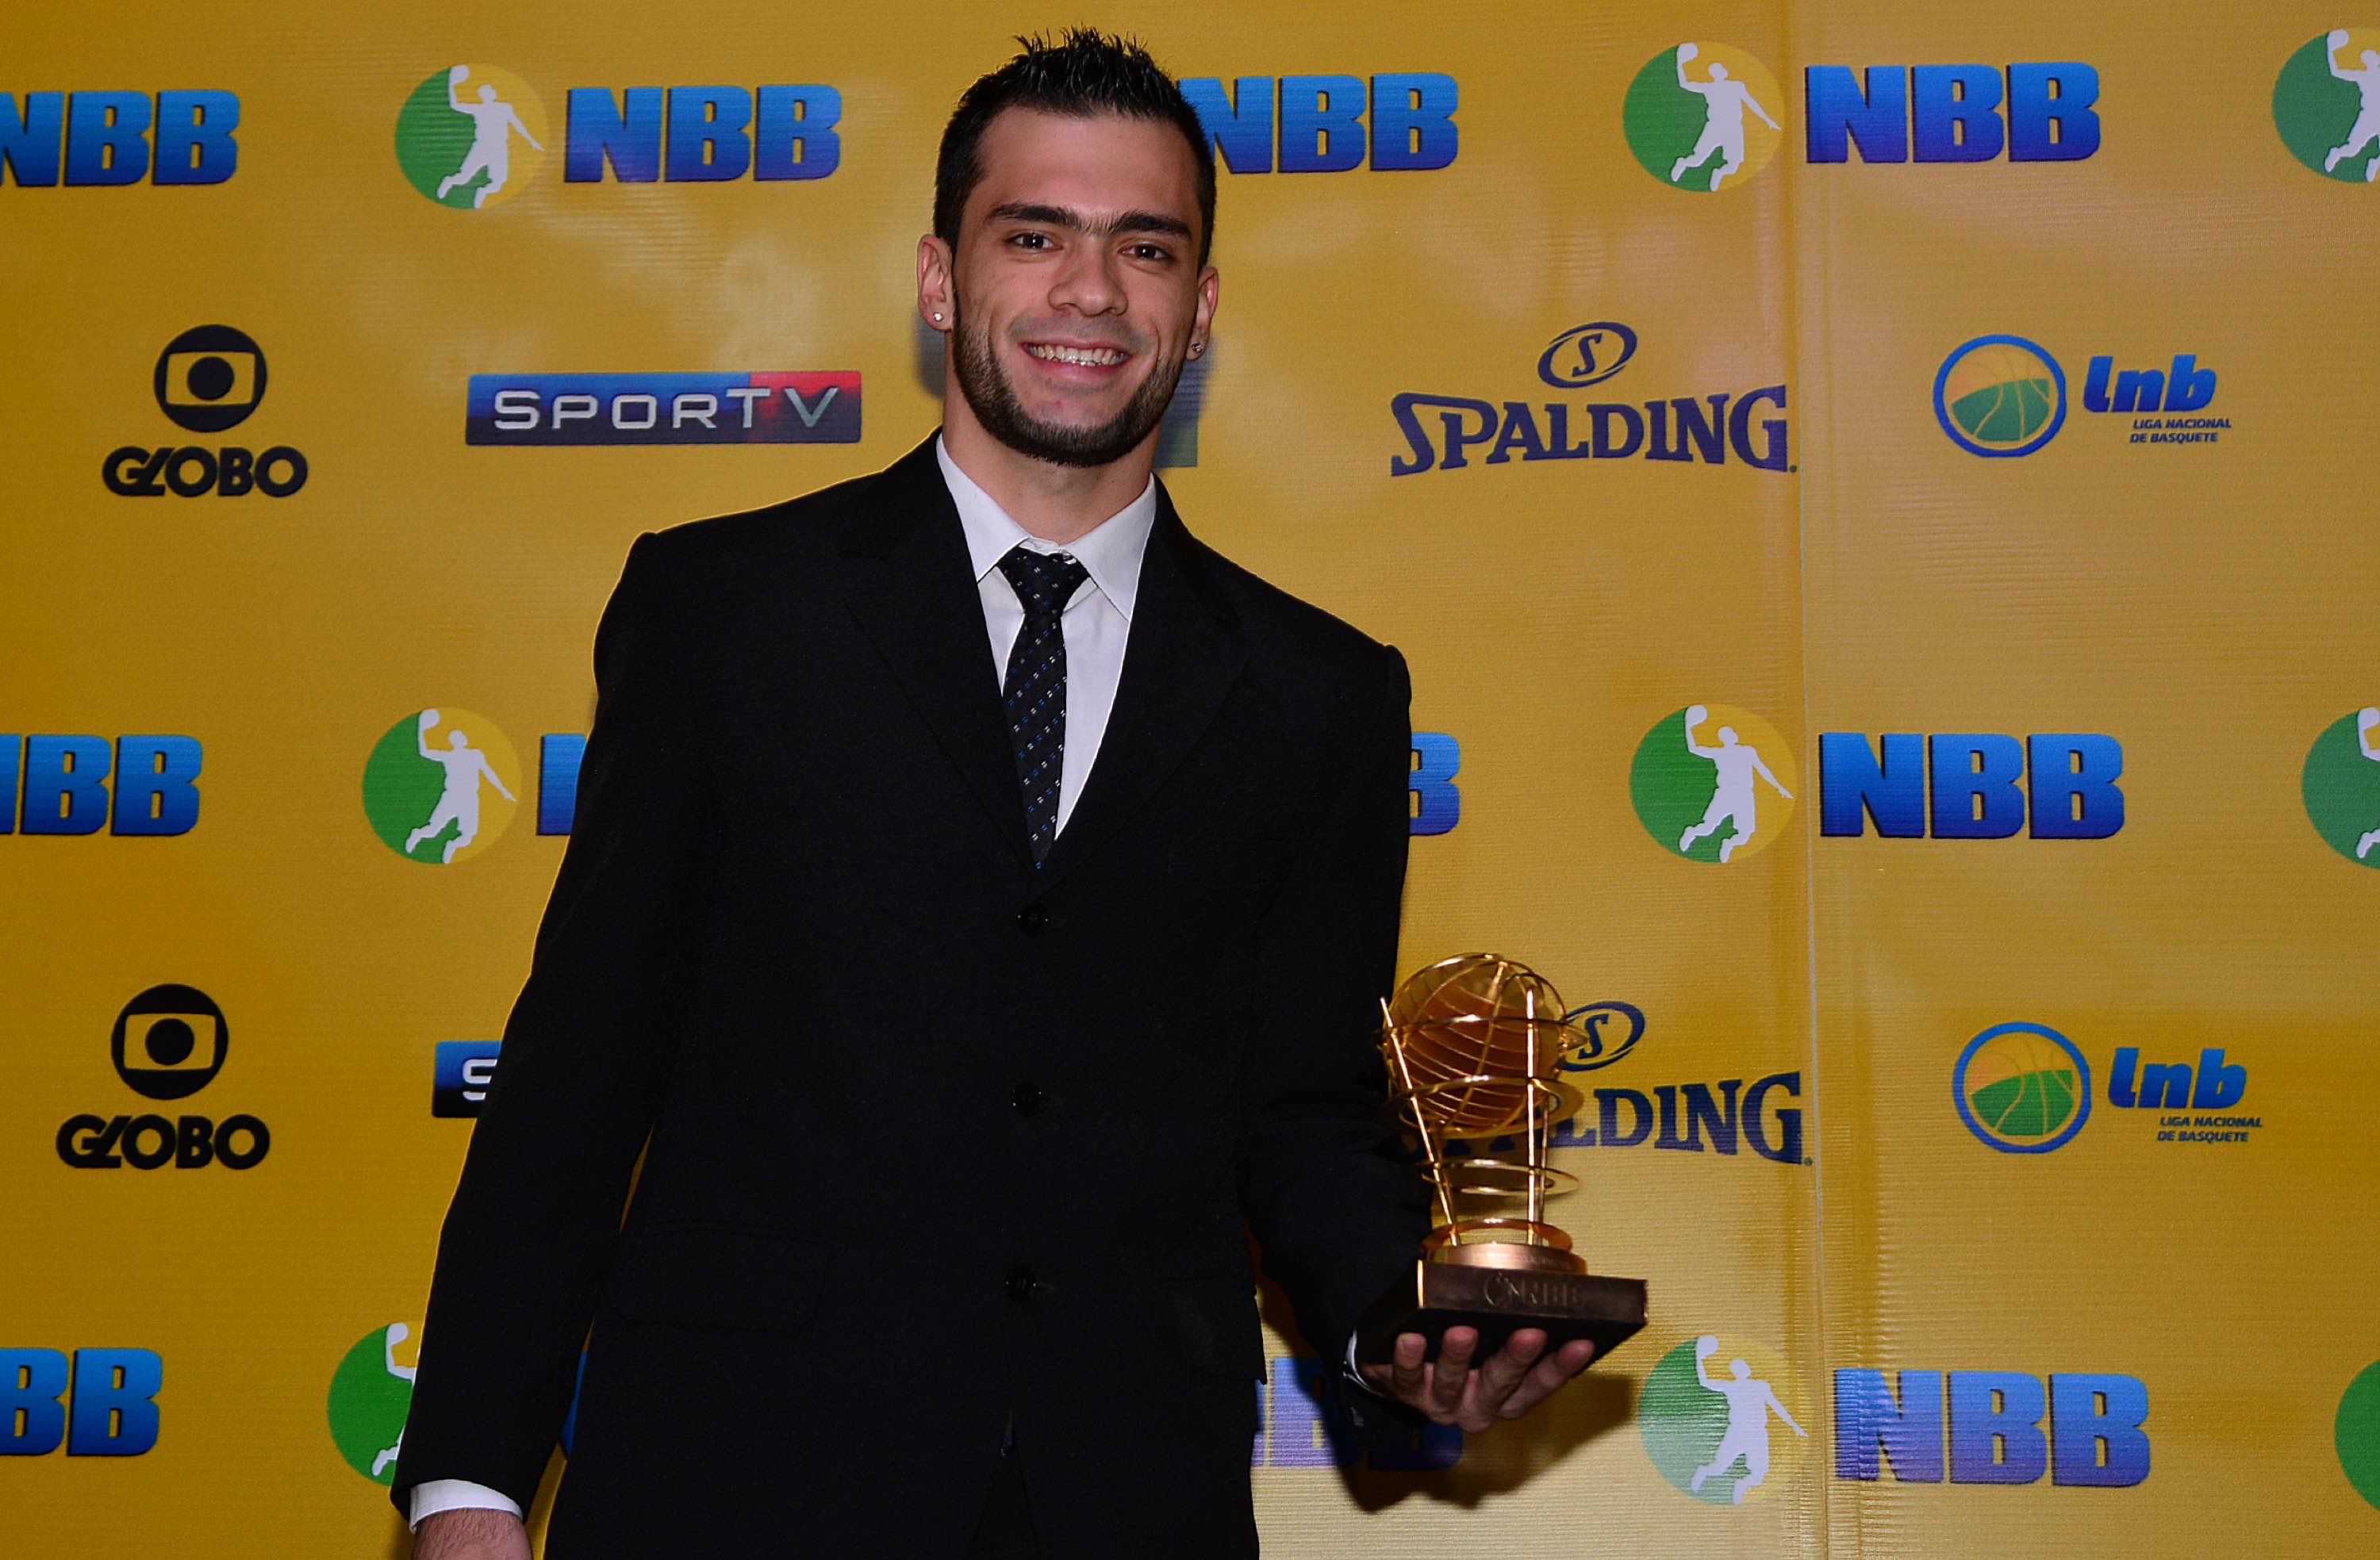 Vencedor deste prêmio na última temporada, Deryk está na luta pelo bicampeonato (João Pires/LNB)